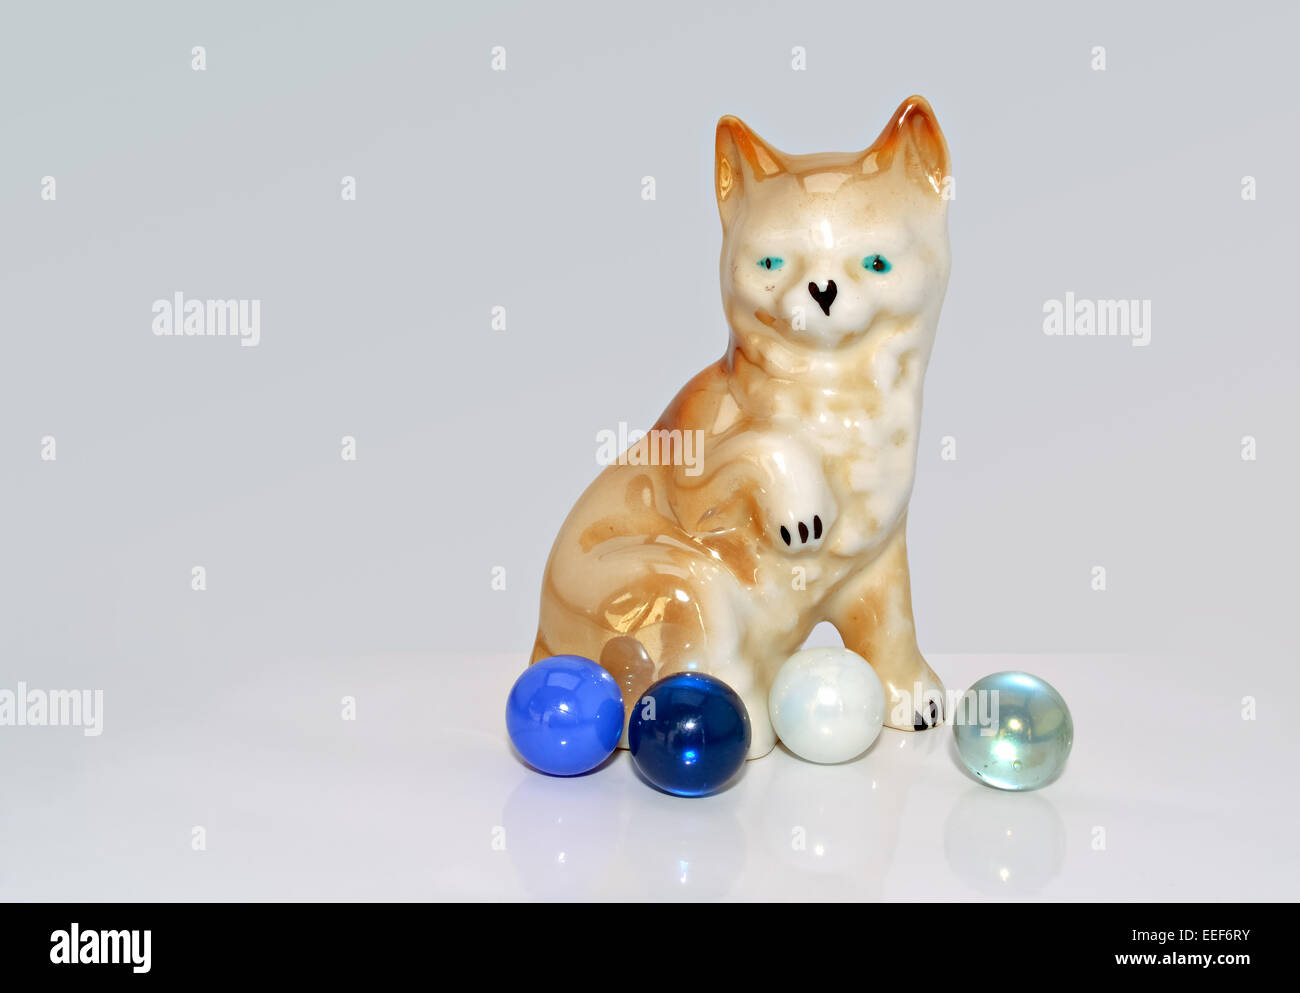 Figurine en porcelaine d'un chien qui est jouer avec des billes Banque D'Images